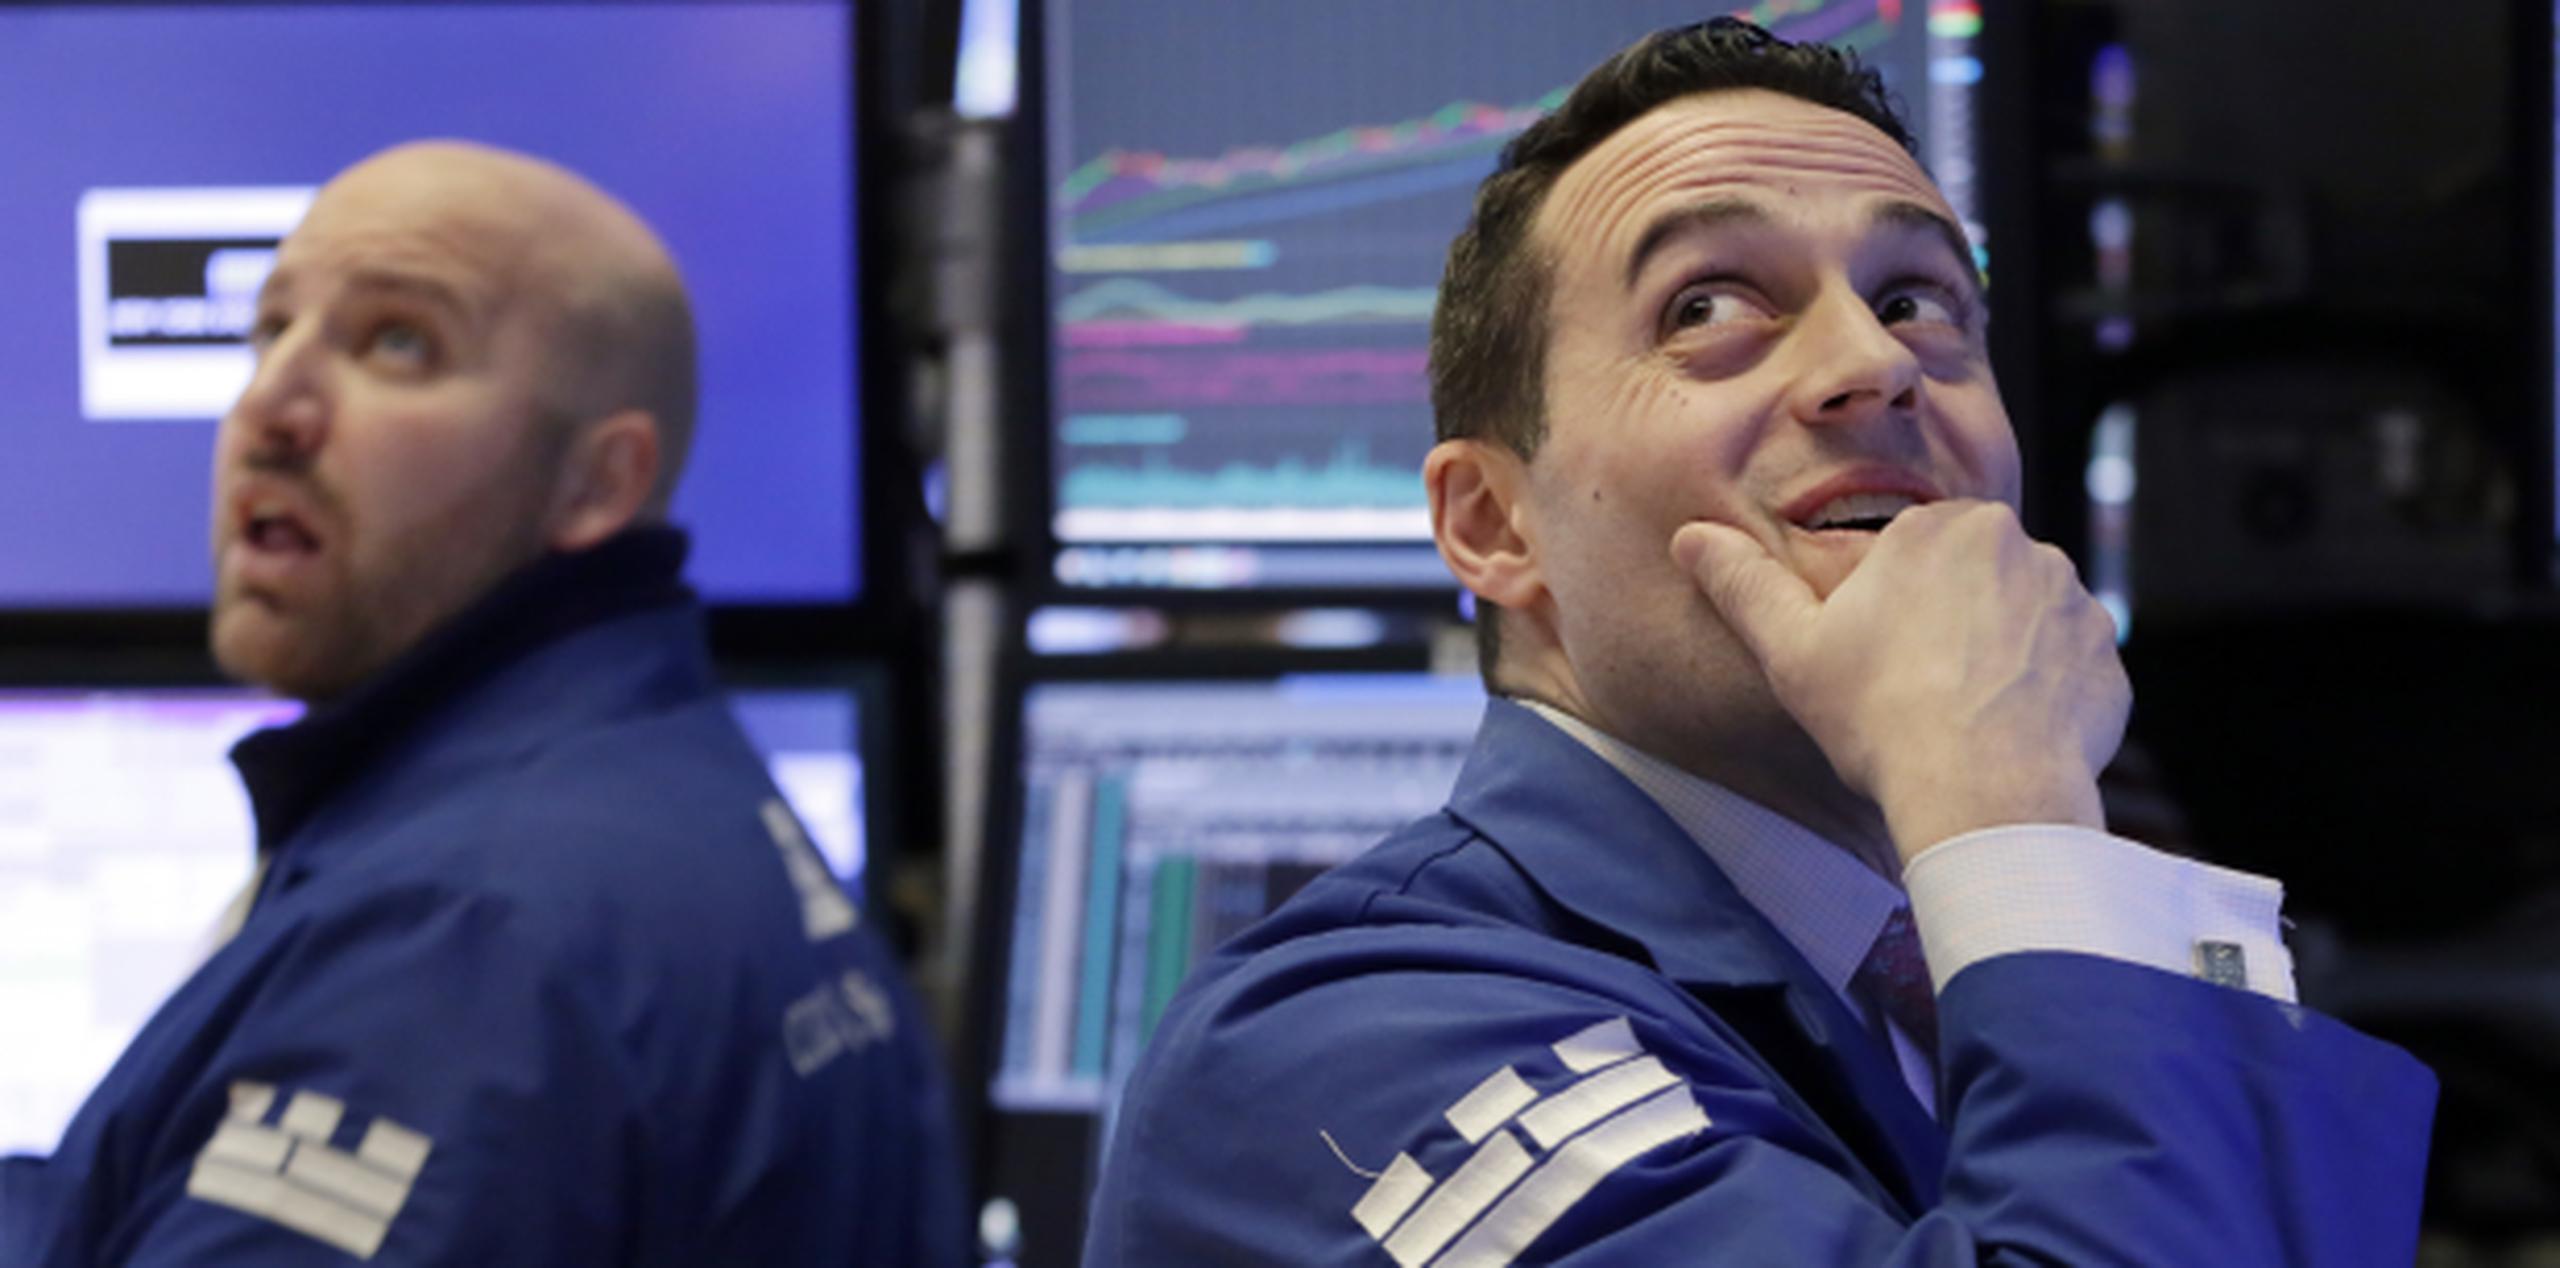 Dos de lops corredores de bolsa ayer en Wall Street observando el histórico desplome. (AP)